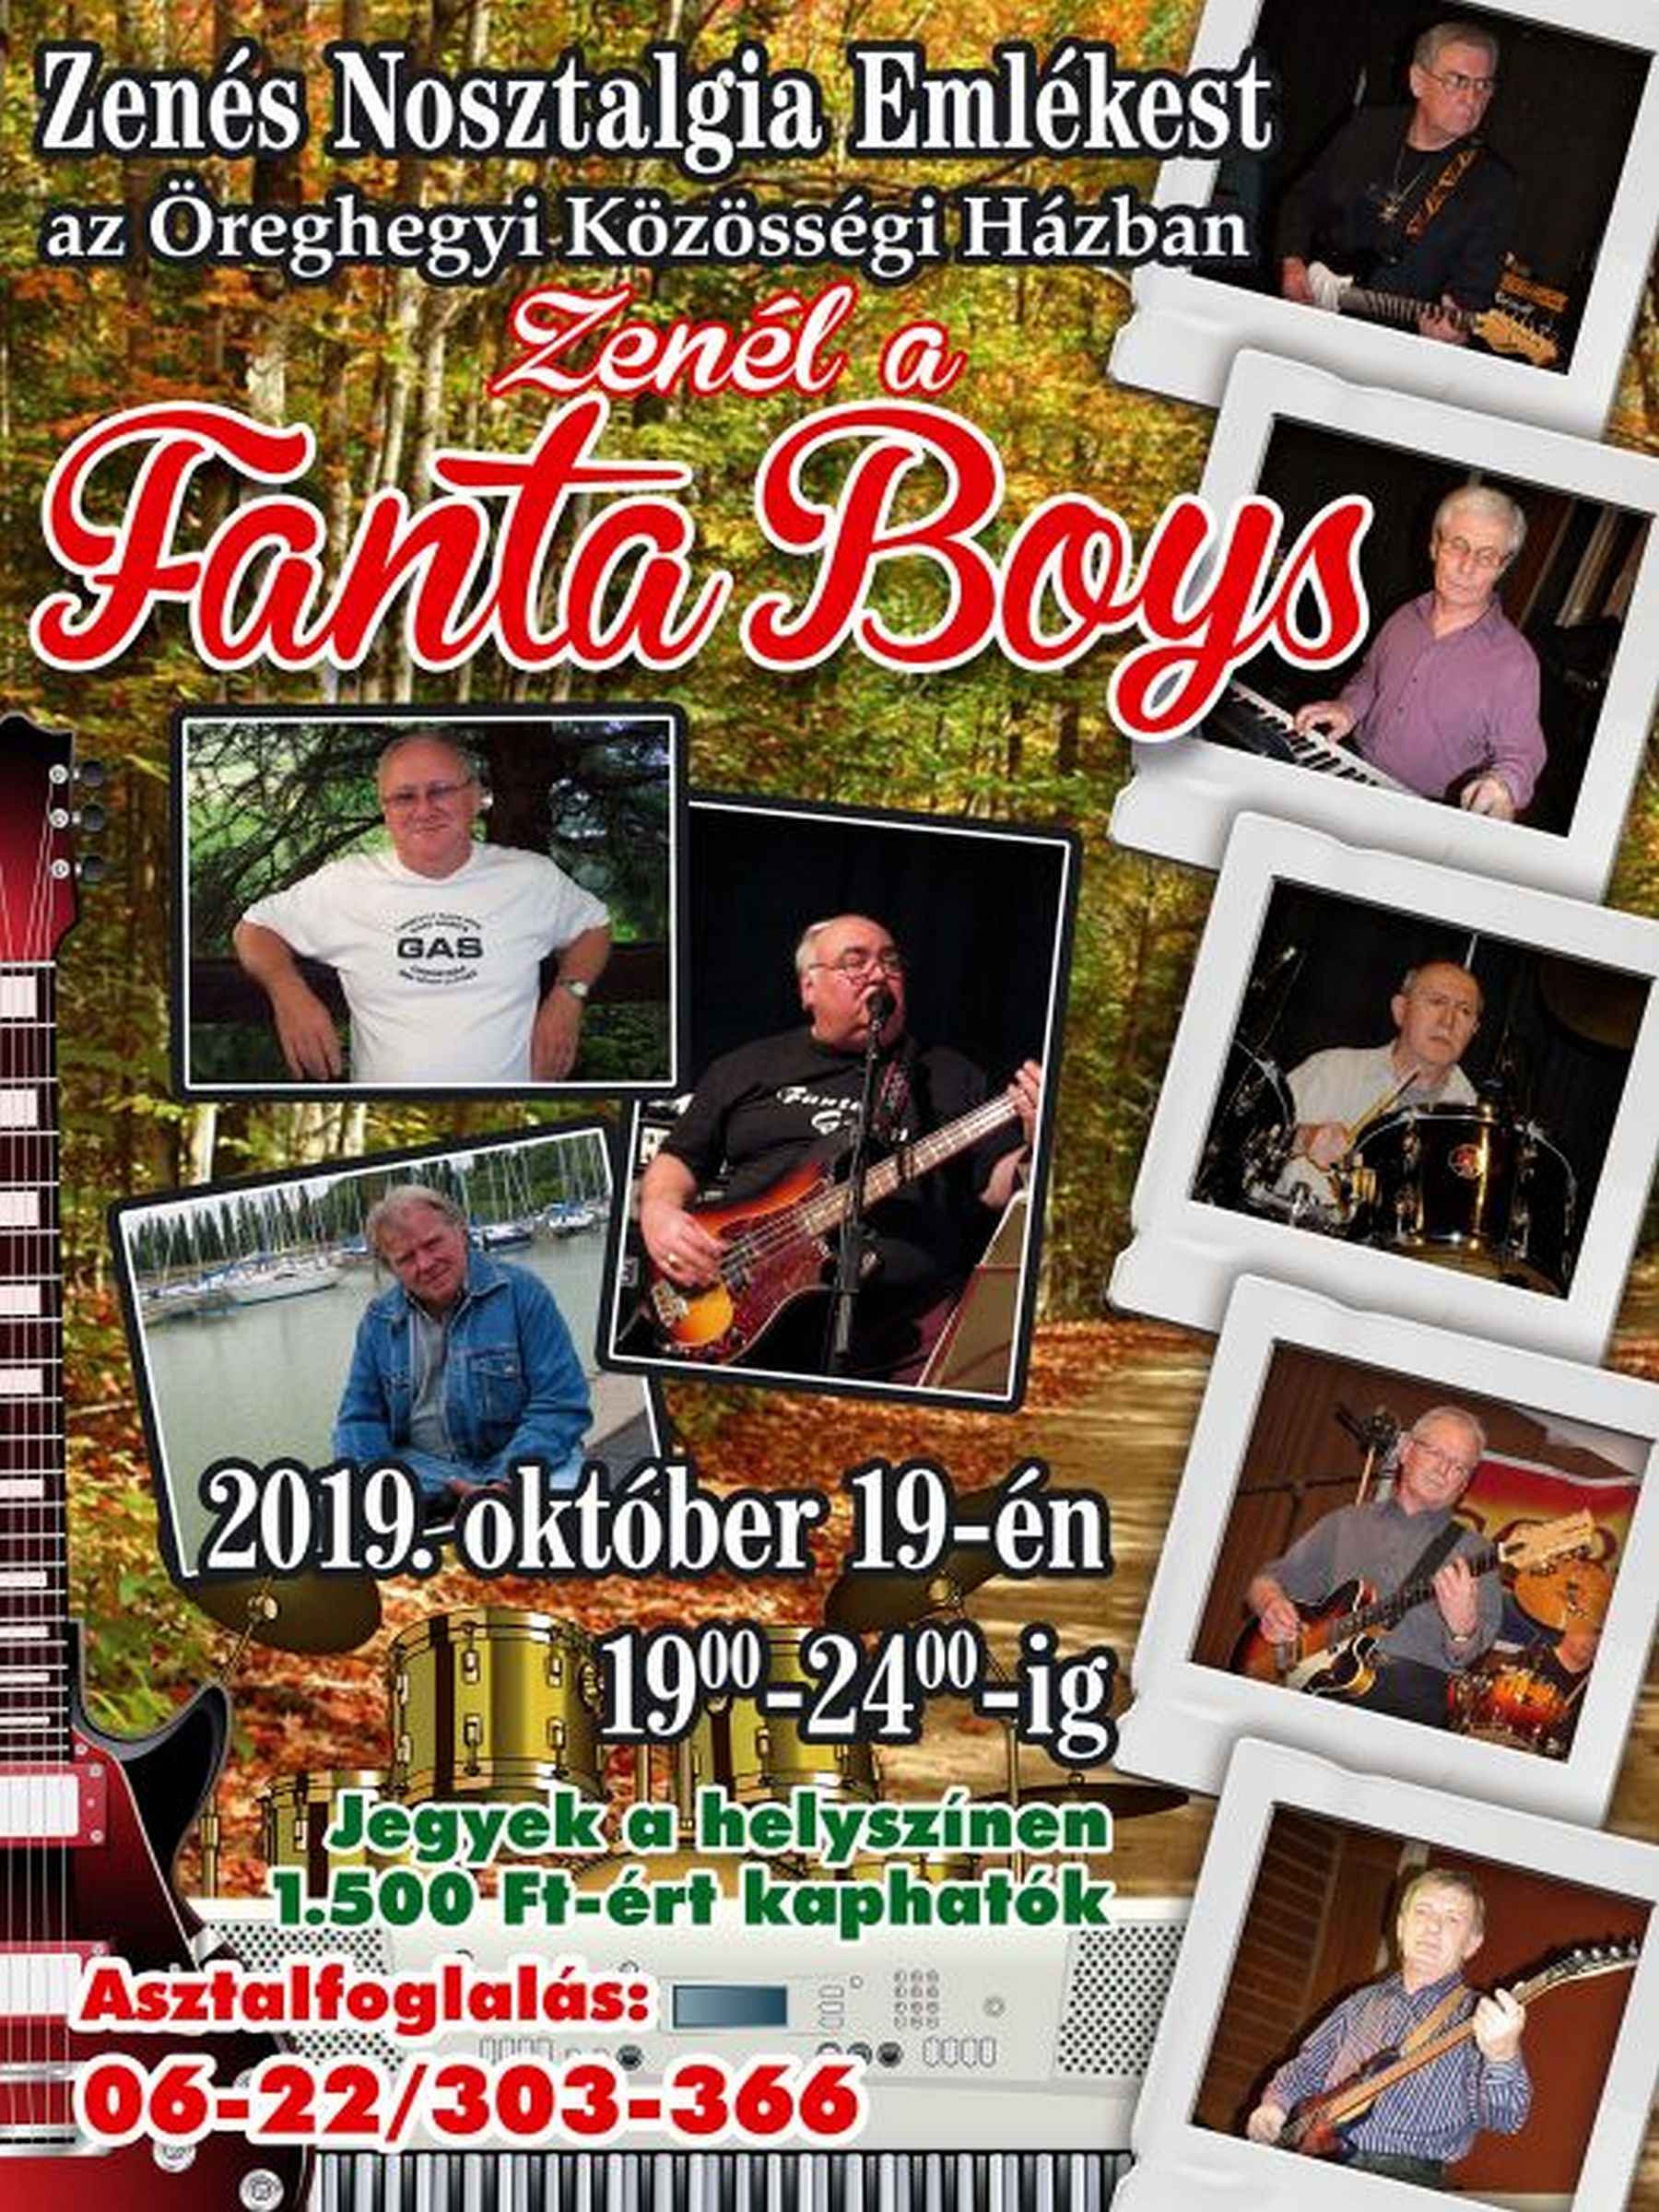 Szombaton lesz a Fanta Boys őszi bulija az Öreghegyi Közösségi Házban